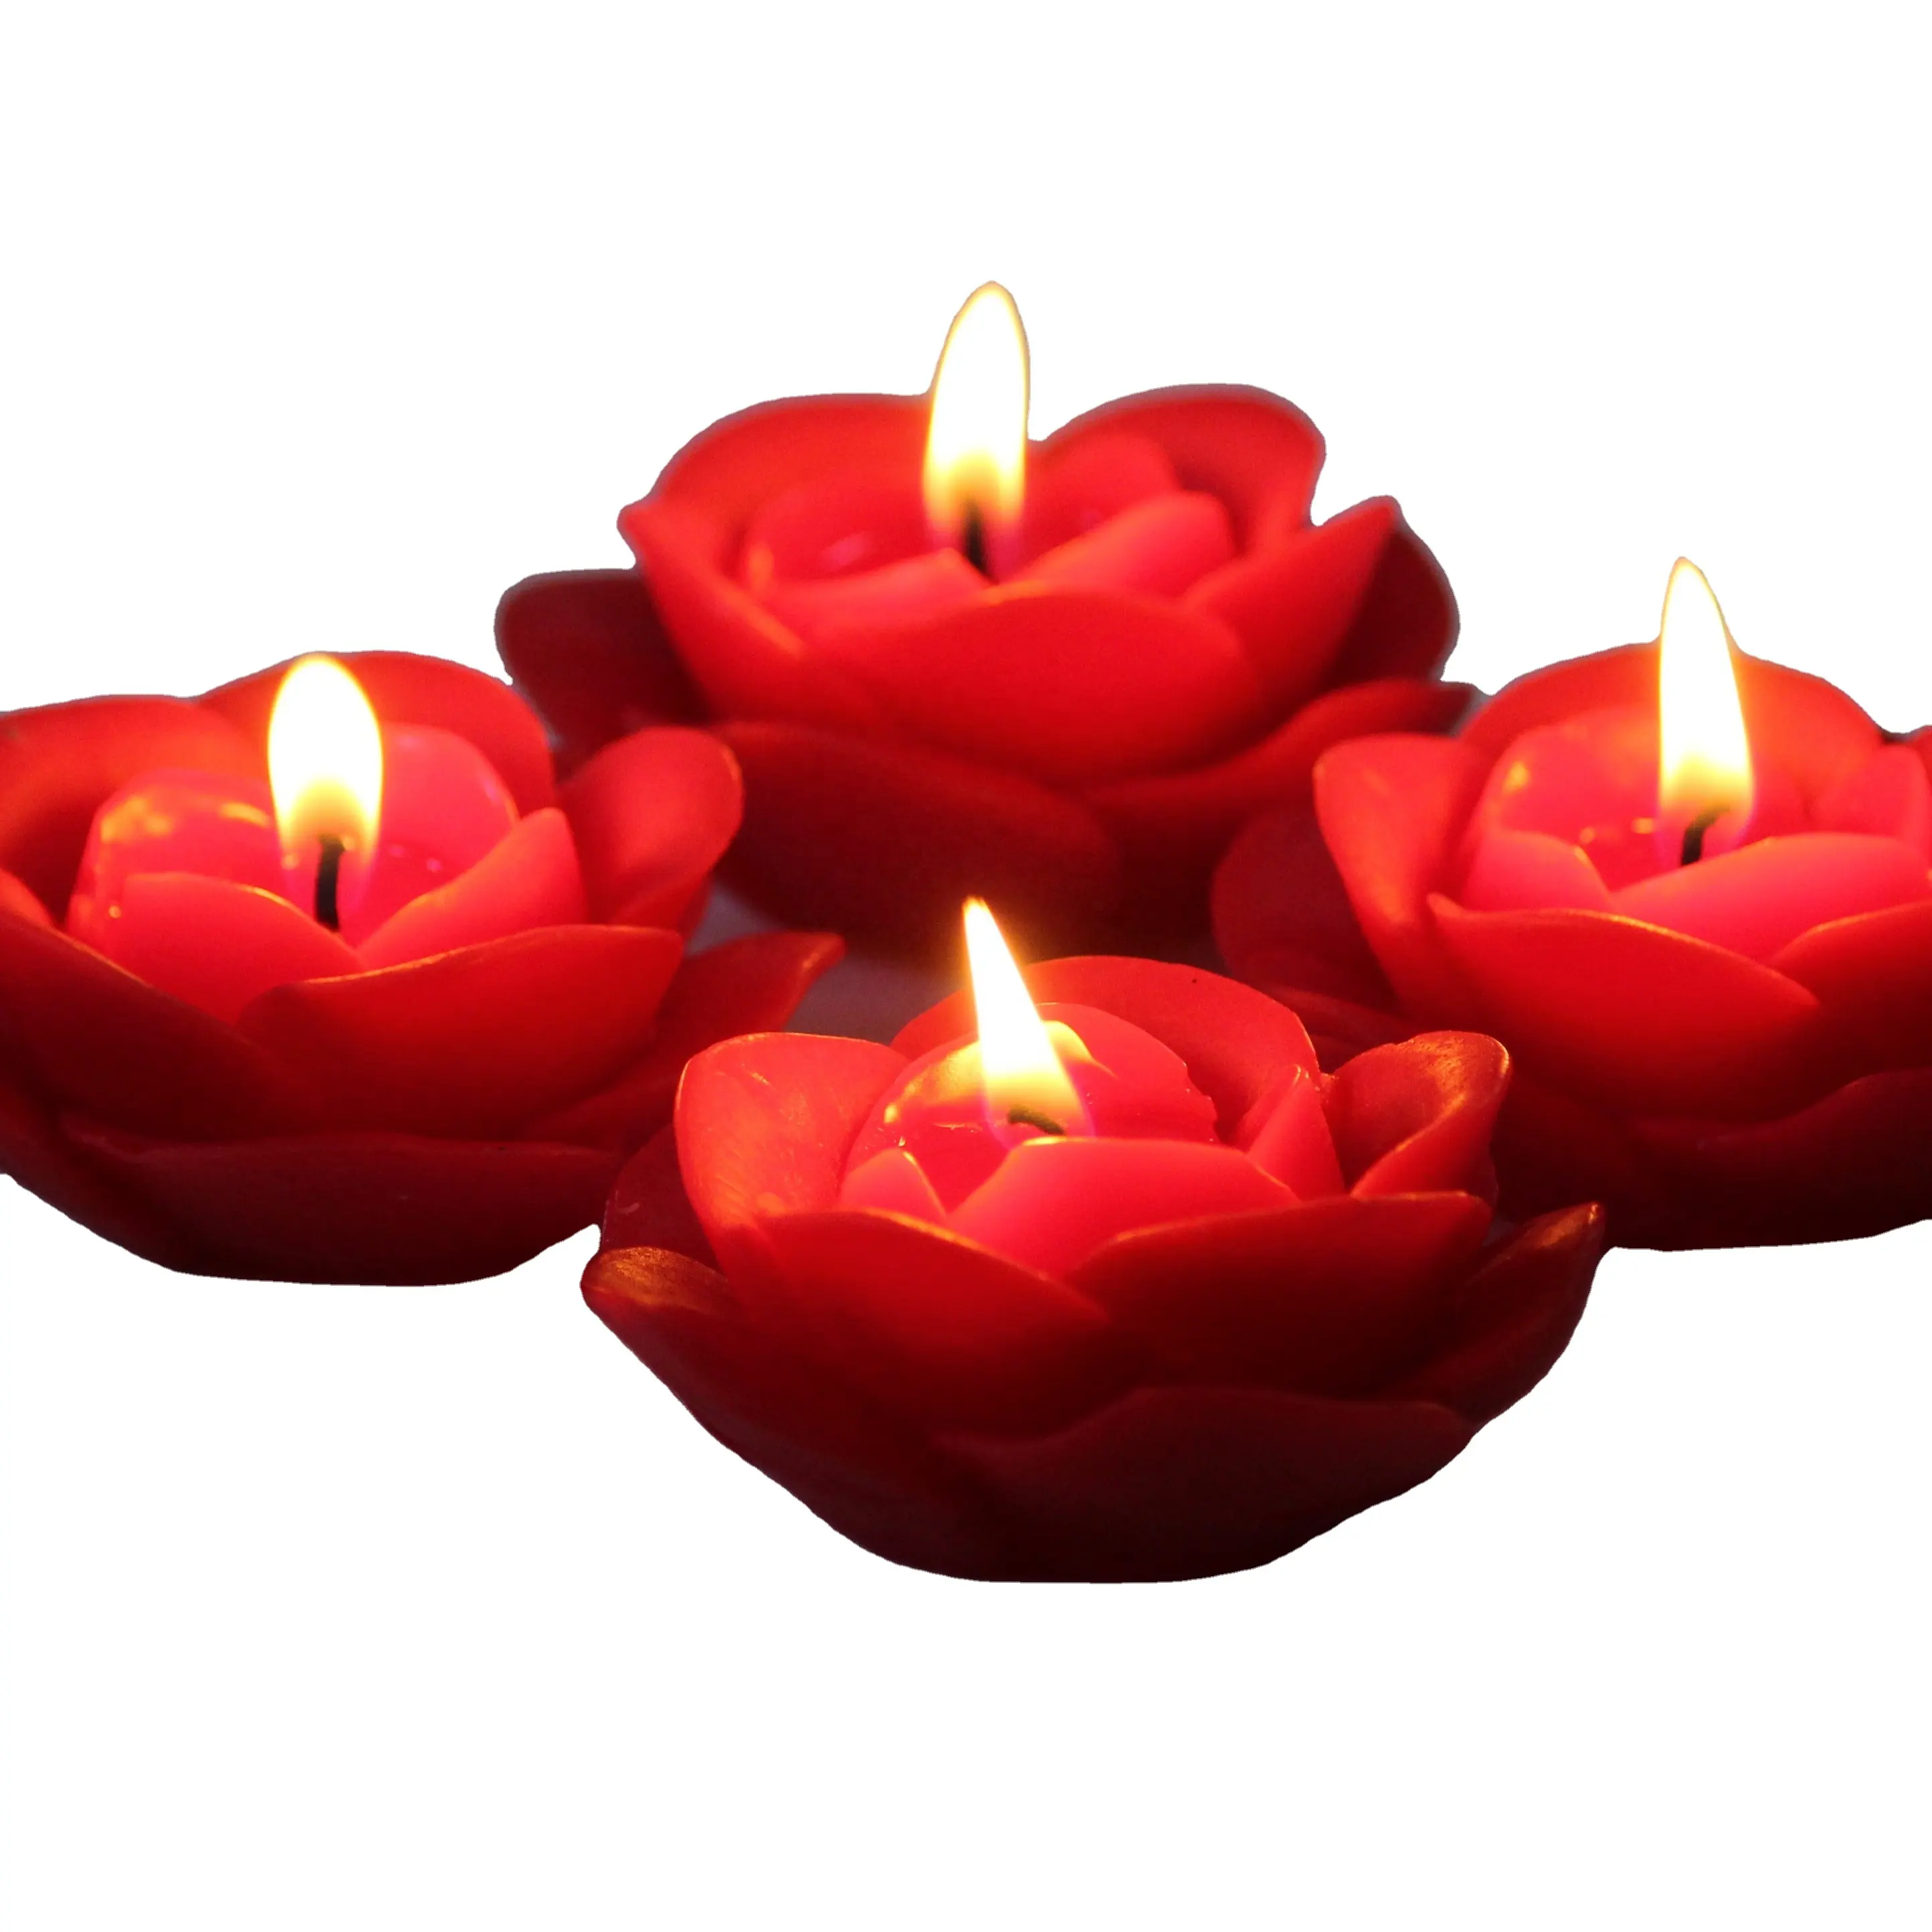 شمع برافين عالي الجودة على شكل وردة, شمعة شموع معطرة باللون الأحمر على شكل وردة على شكل زهرة باللون الأحمر مع شموع هدية غير مدخنة للزينة